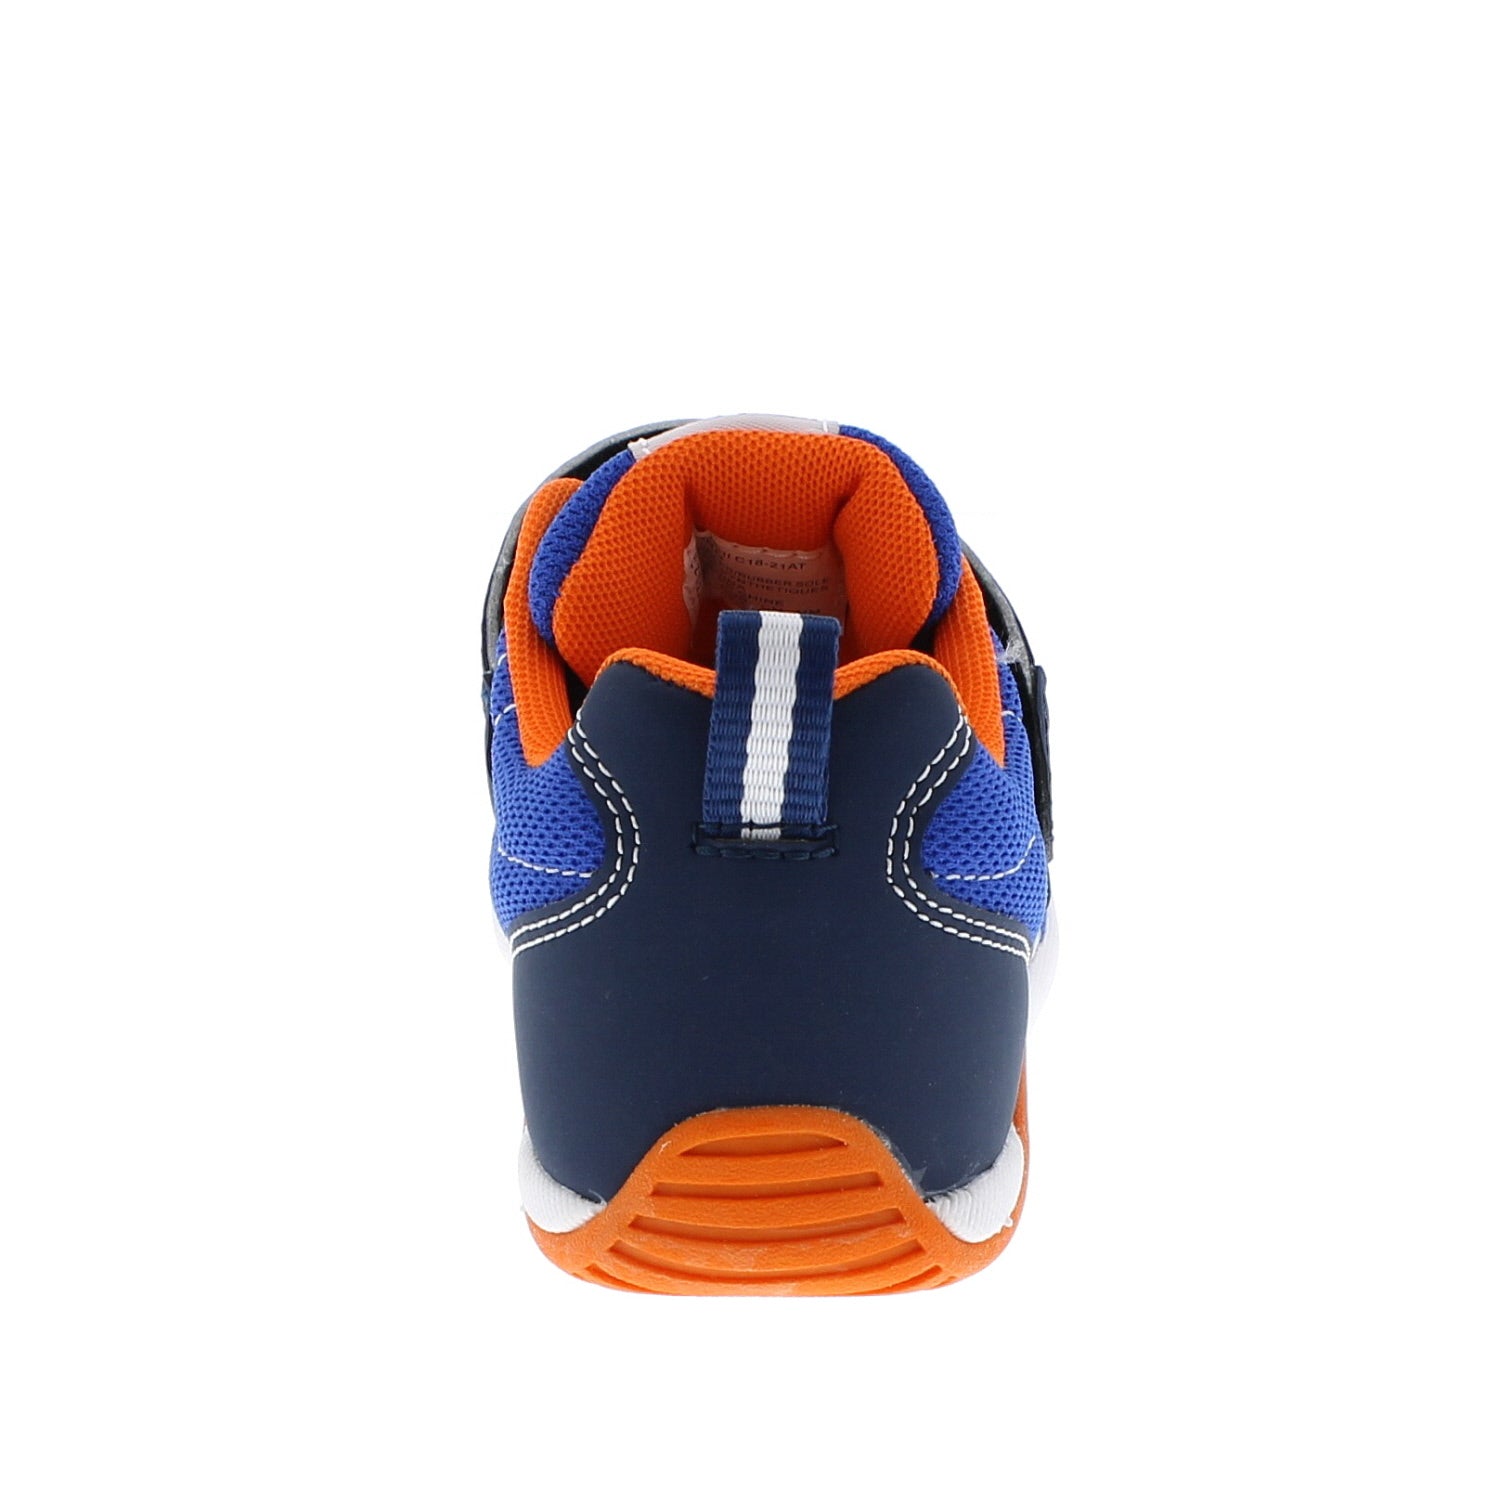 Kaz Kid's Athletic Sneaker - Navy/Tangerine